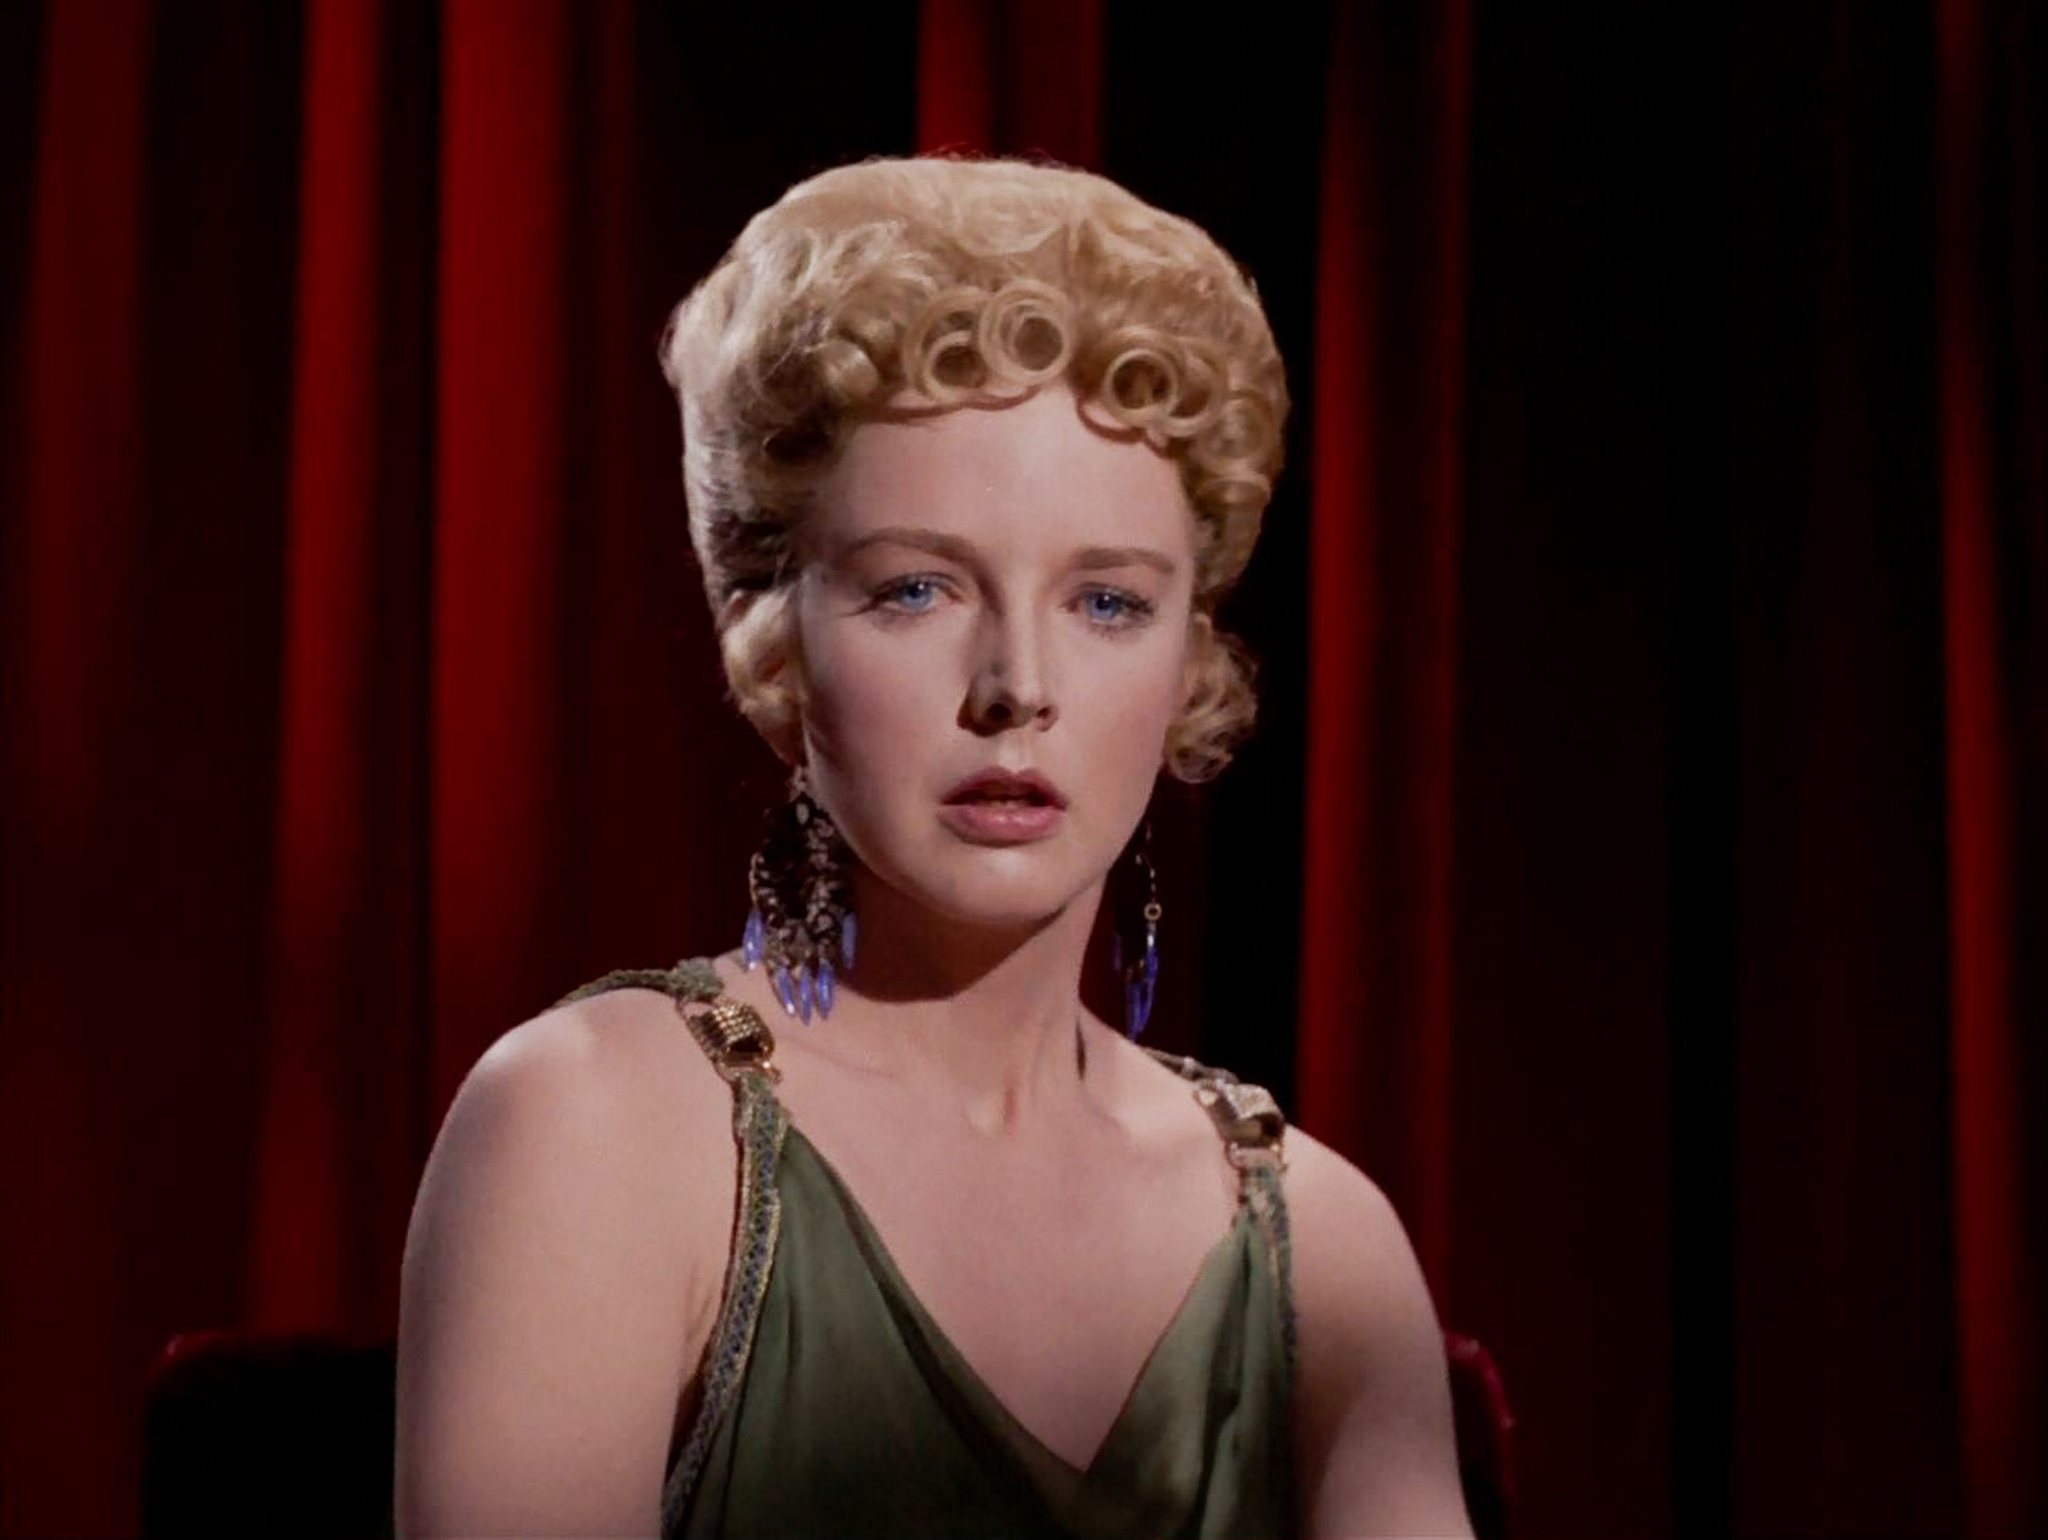 Still of Barbara Babcock in Star Trek (1966)